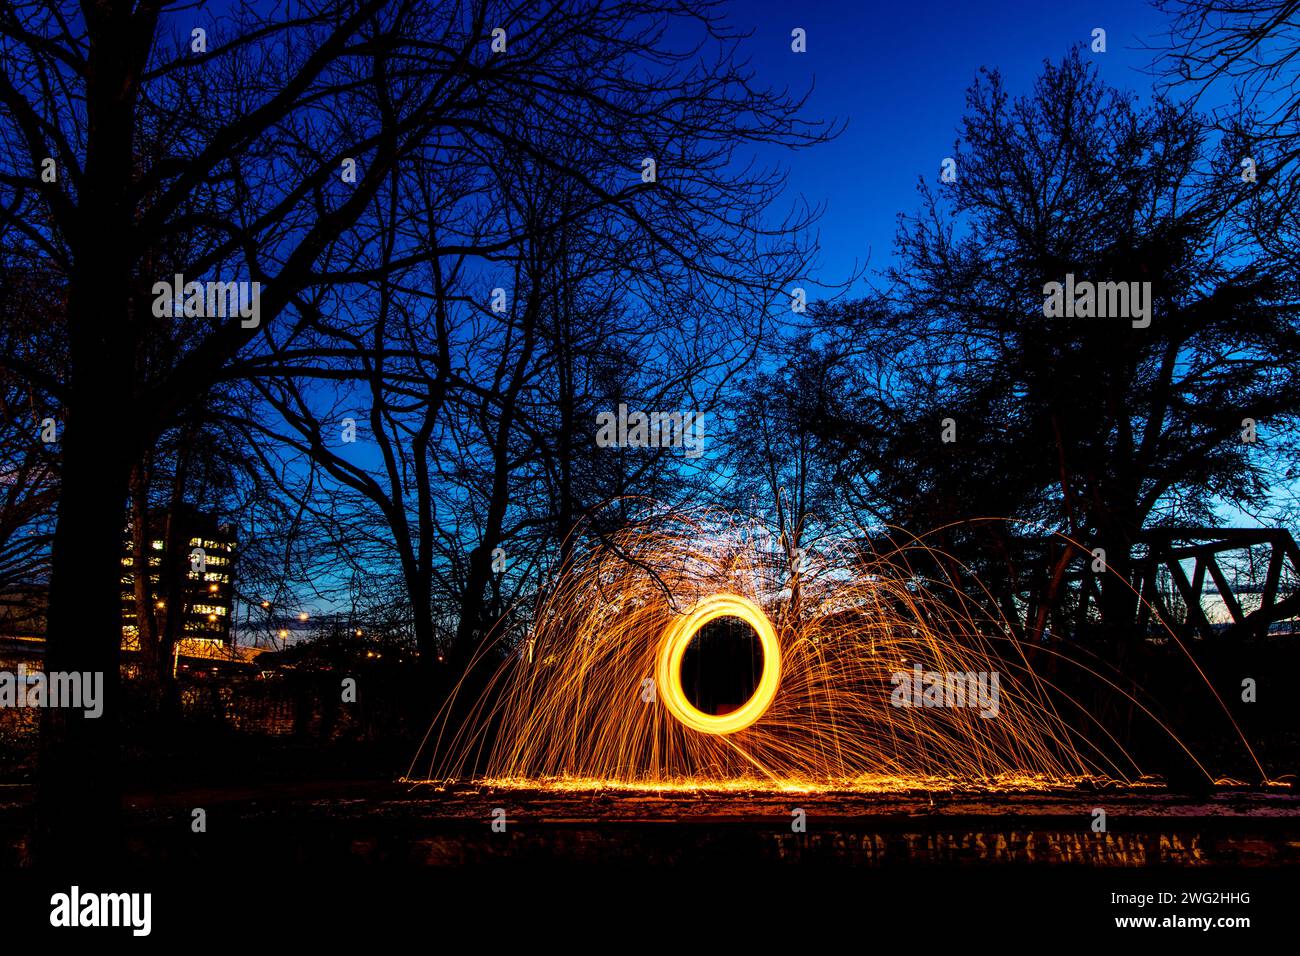 Eine lebendige Ausstellung von Stahlwolle-Fotografien in einem Park bei Nacht Stockfoto